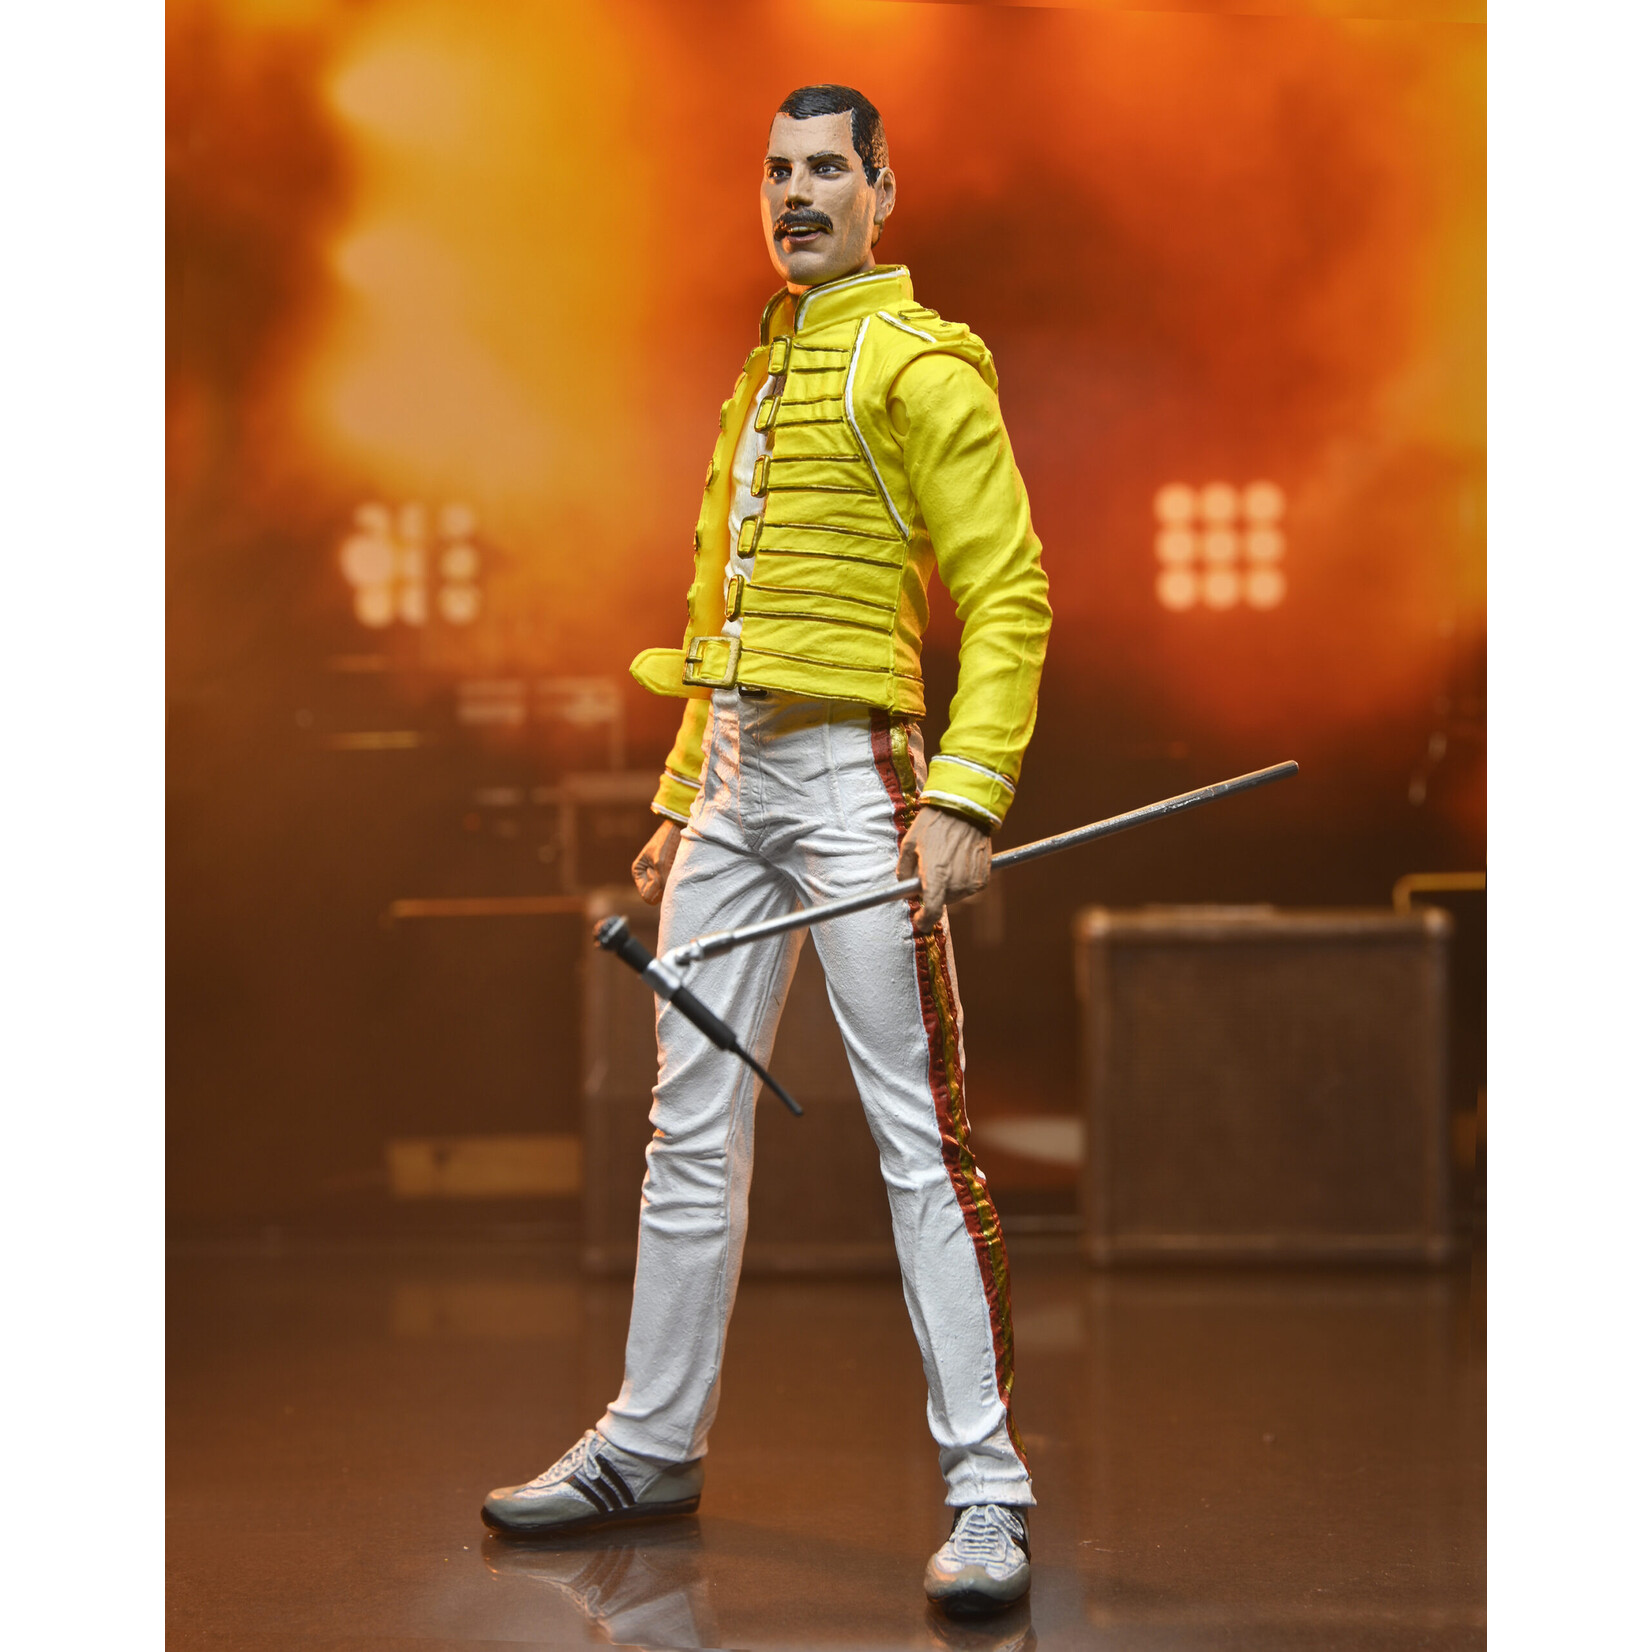 NECA NECA Freddie Mercury Yellow Jacket Action Figure 18 cm